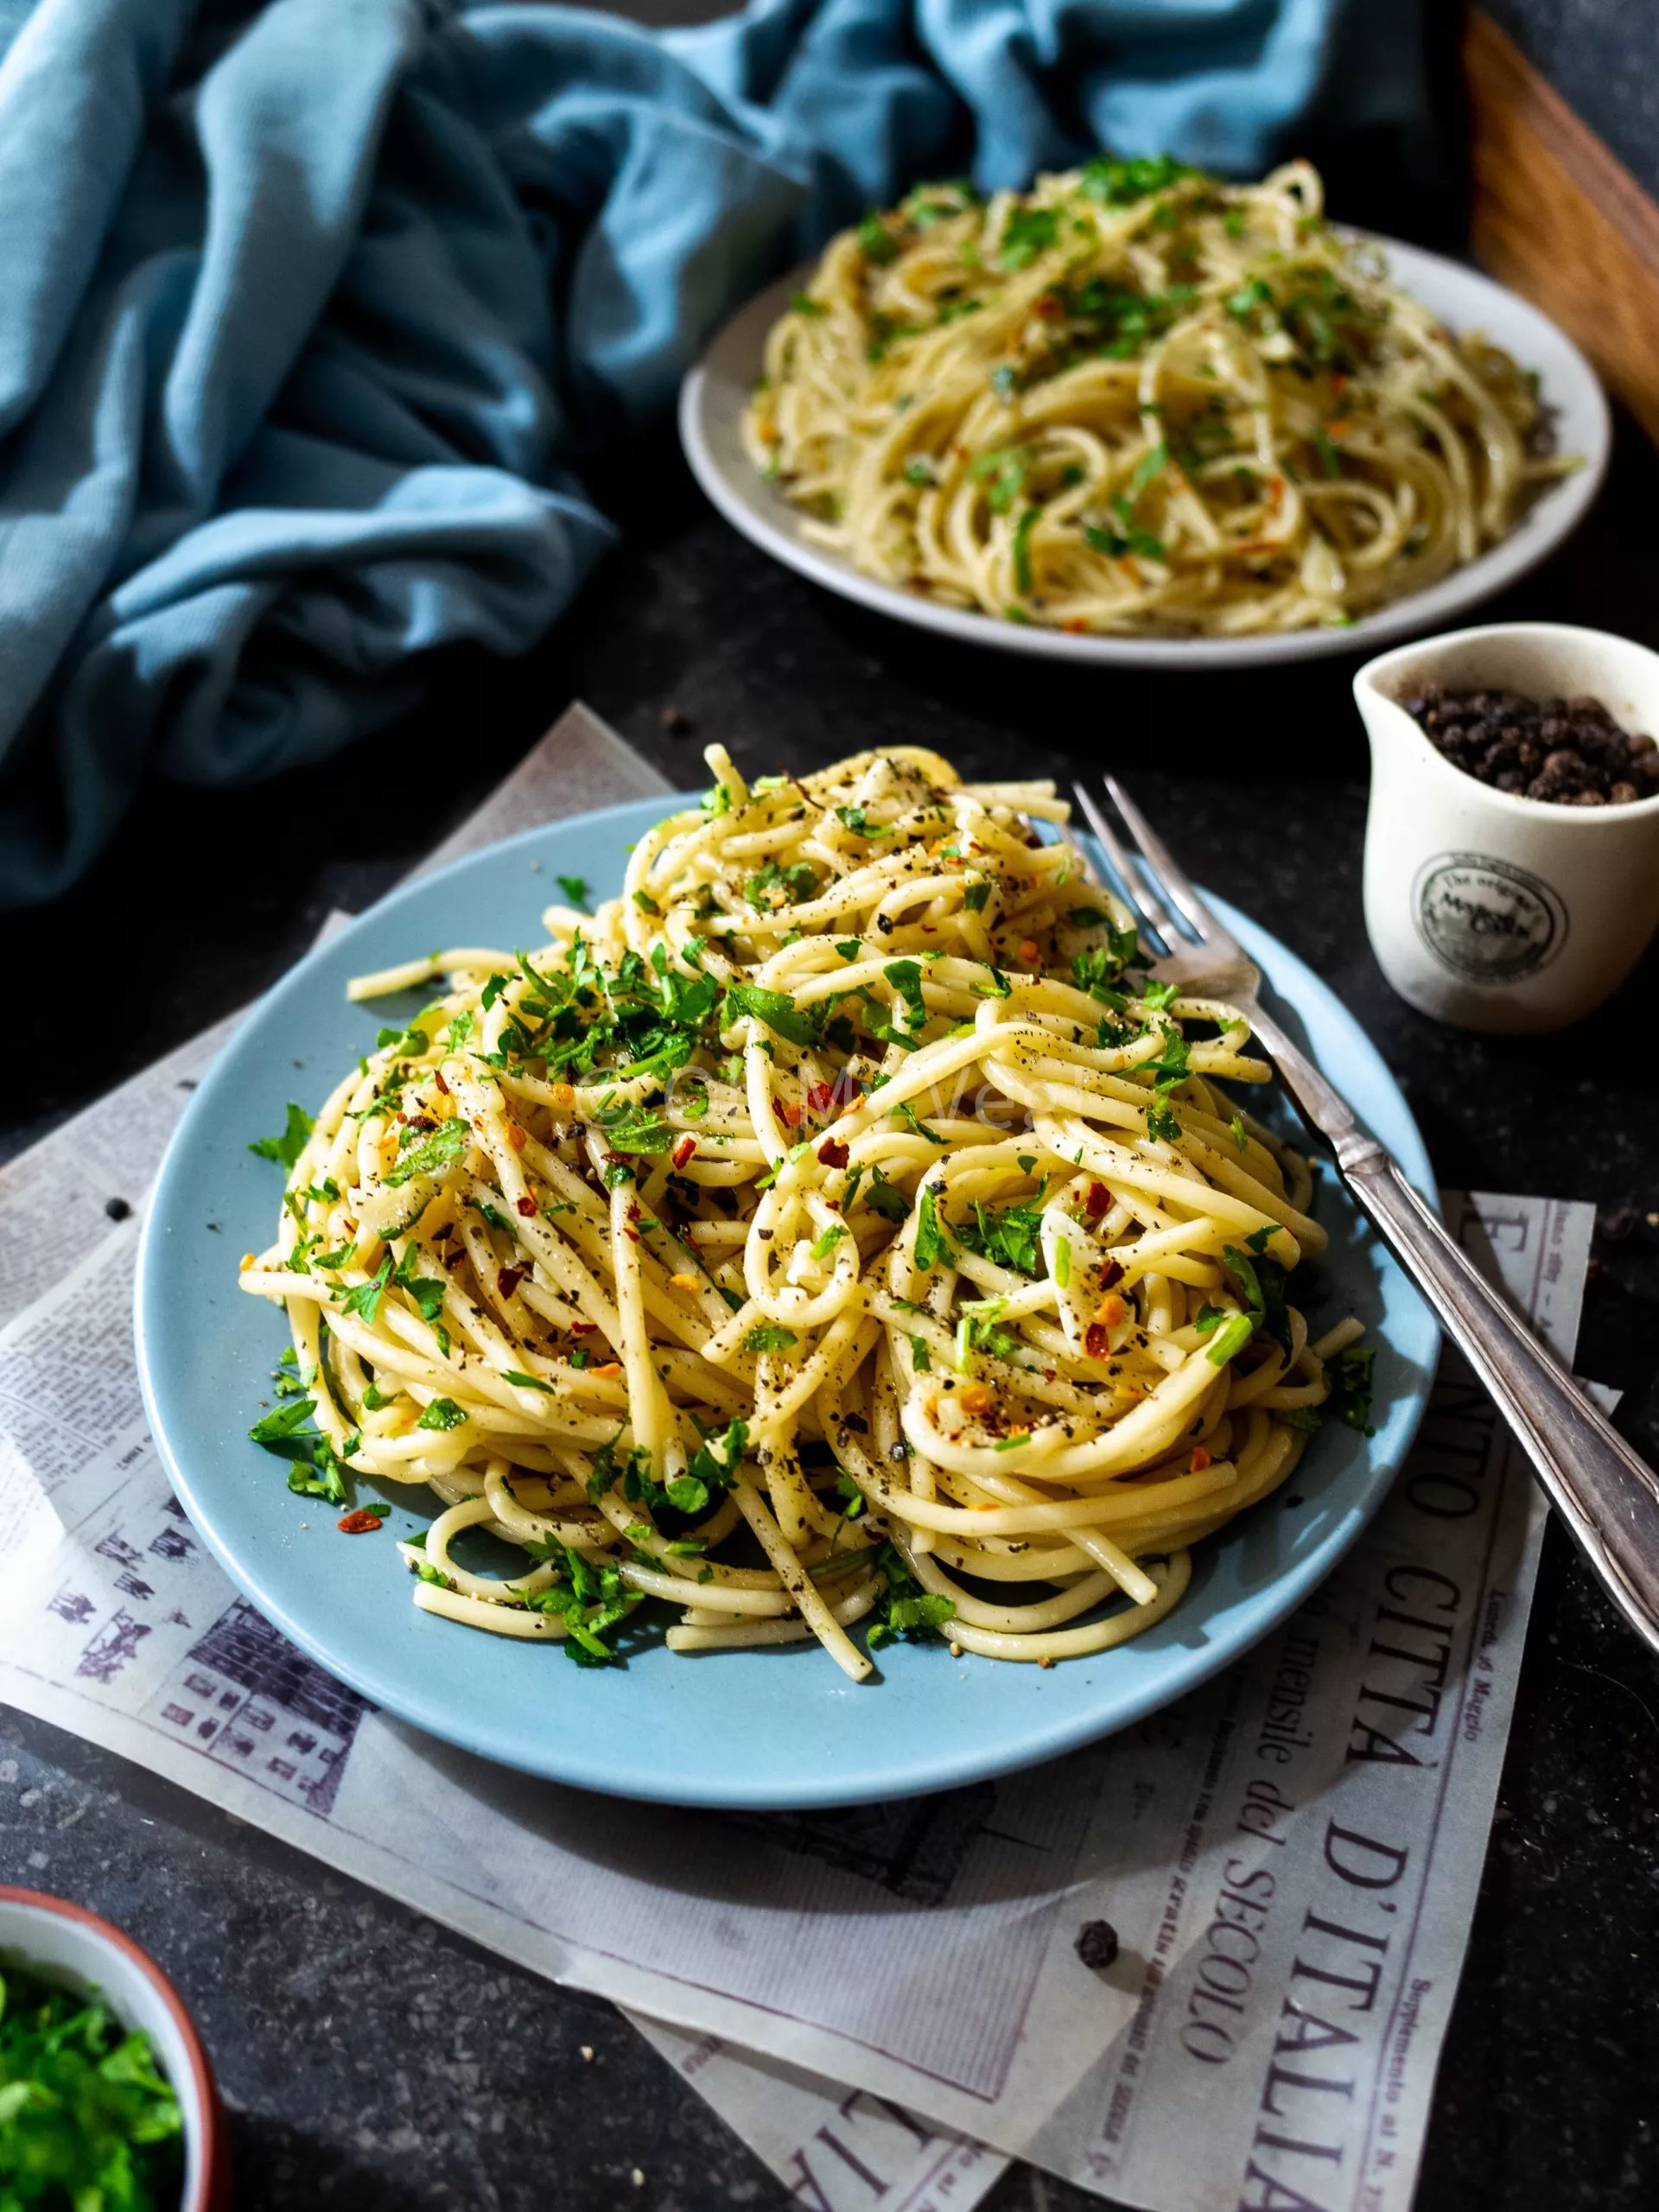 Spaghetti Aglio e Olio – Garlic & Oil Pasta (Vegan)